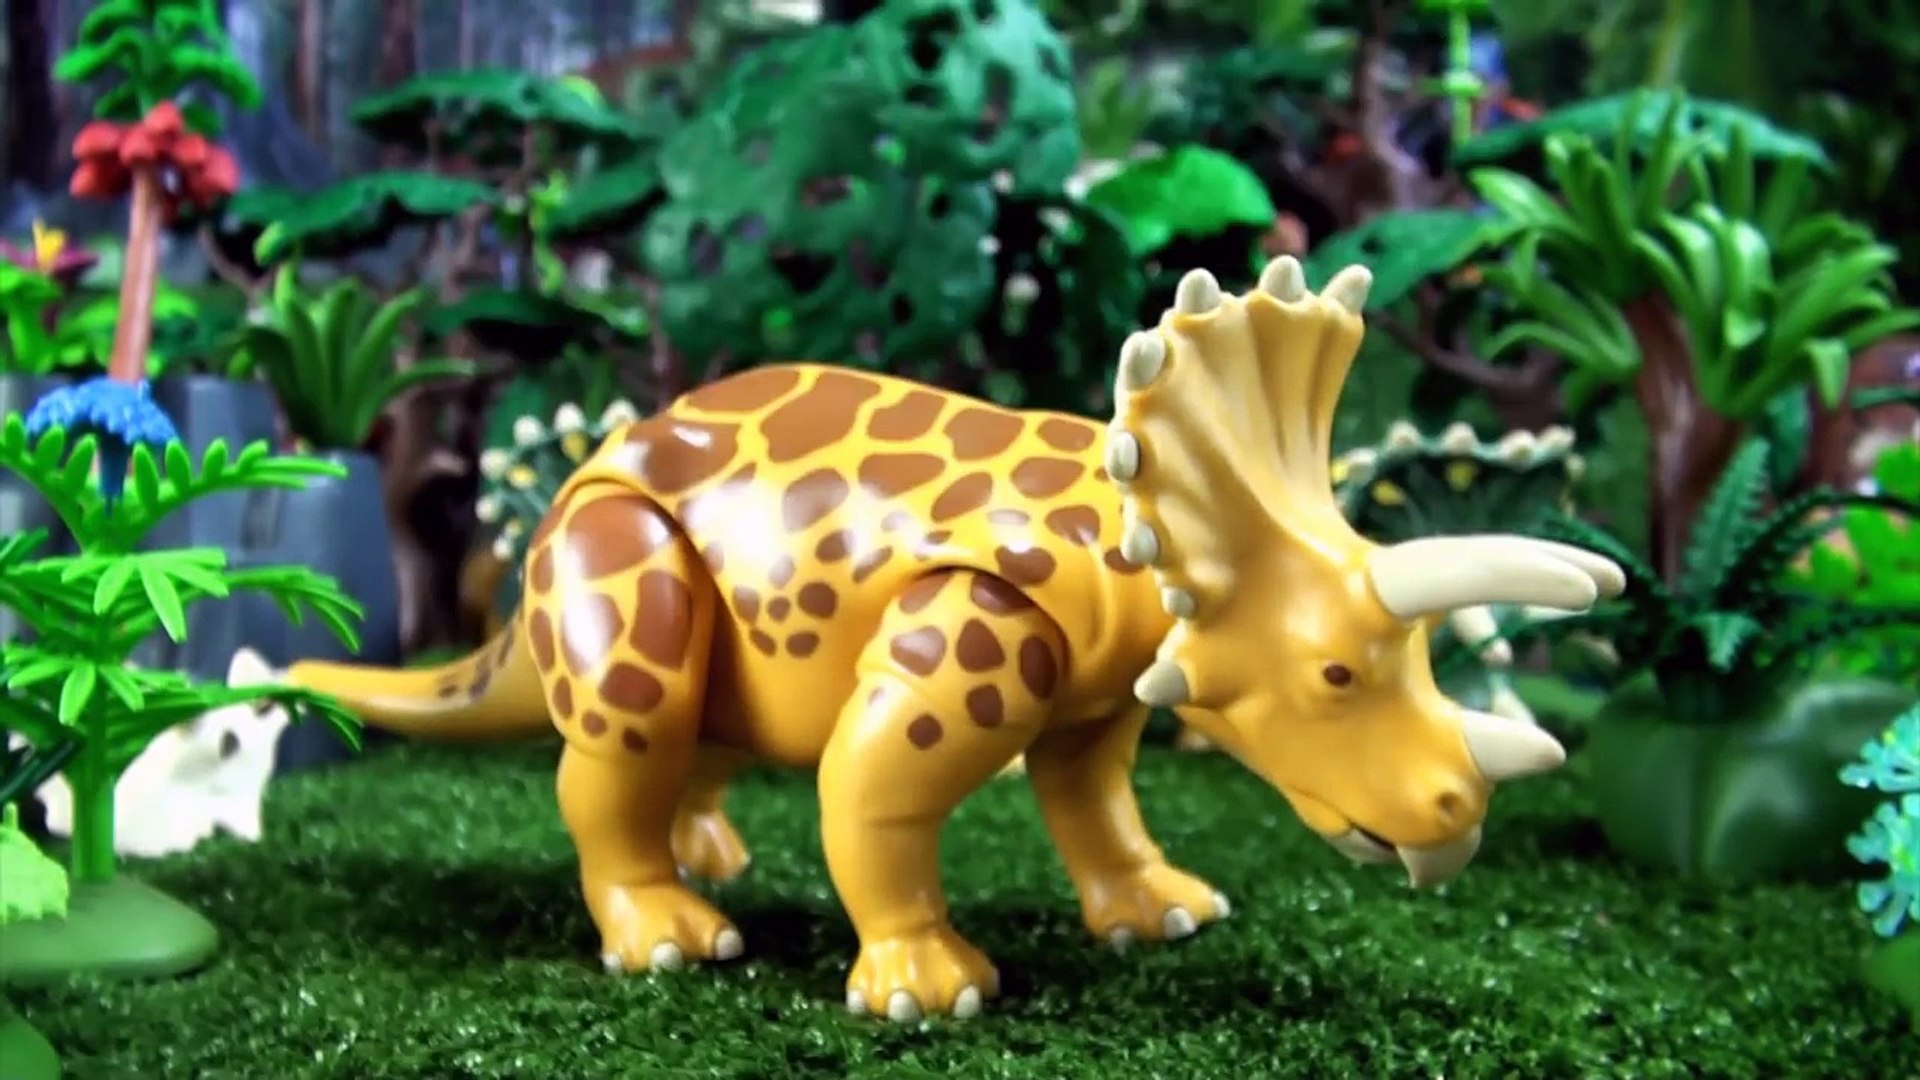 50 Playmobil dinosaurs - Toy Dinosaur collection - Tyrannosaurus  Spinosaurus Triceratops Dinos - video Dailymotion